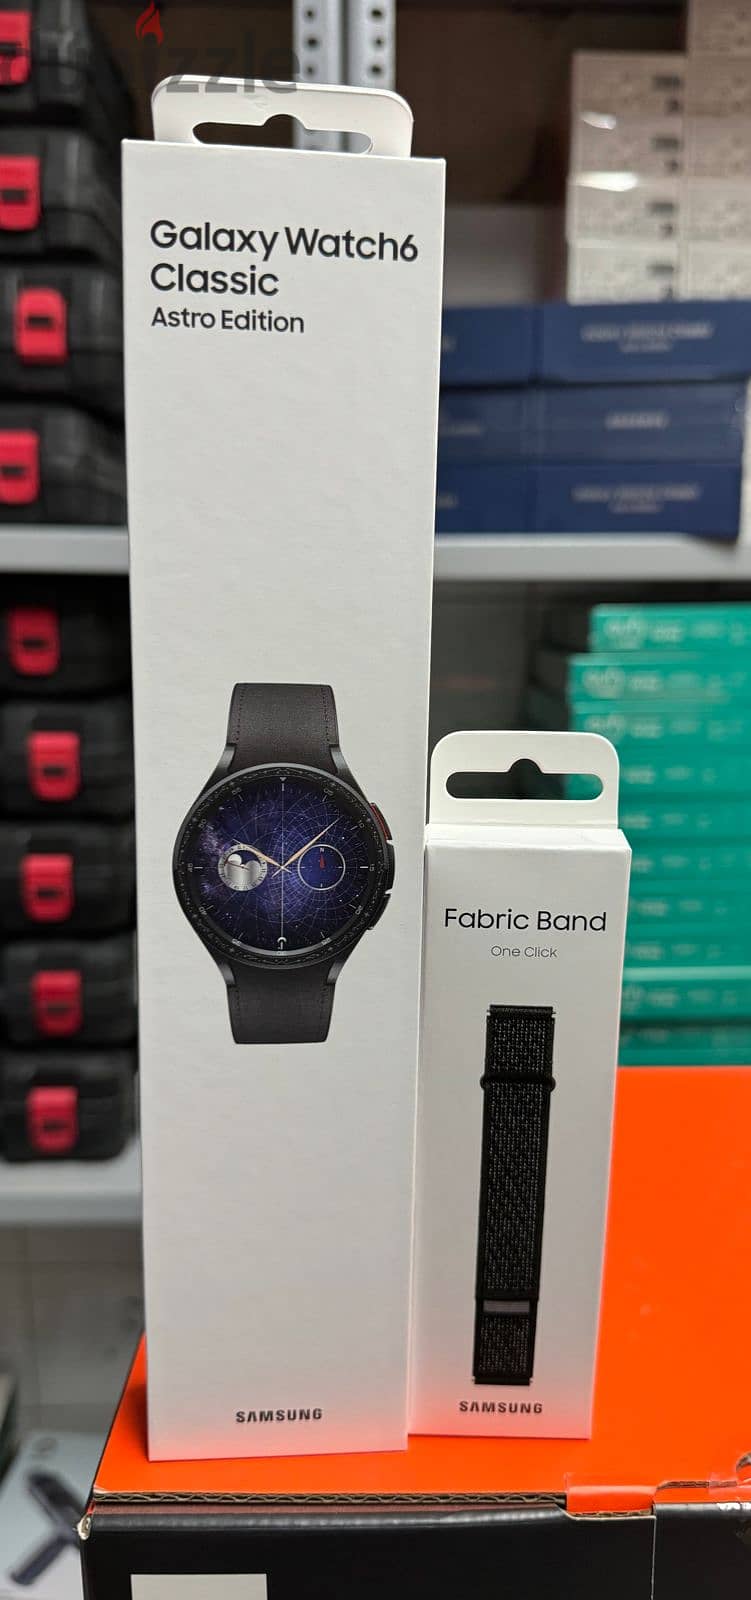 Samsung galaxy watch 6 classic 47mm R960 black Astro edition 0